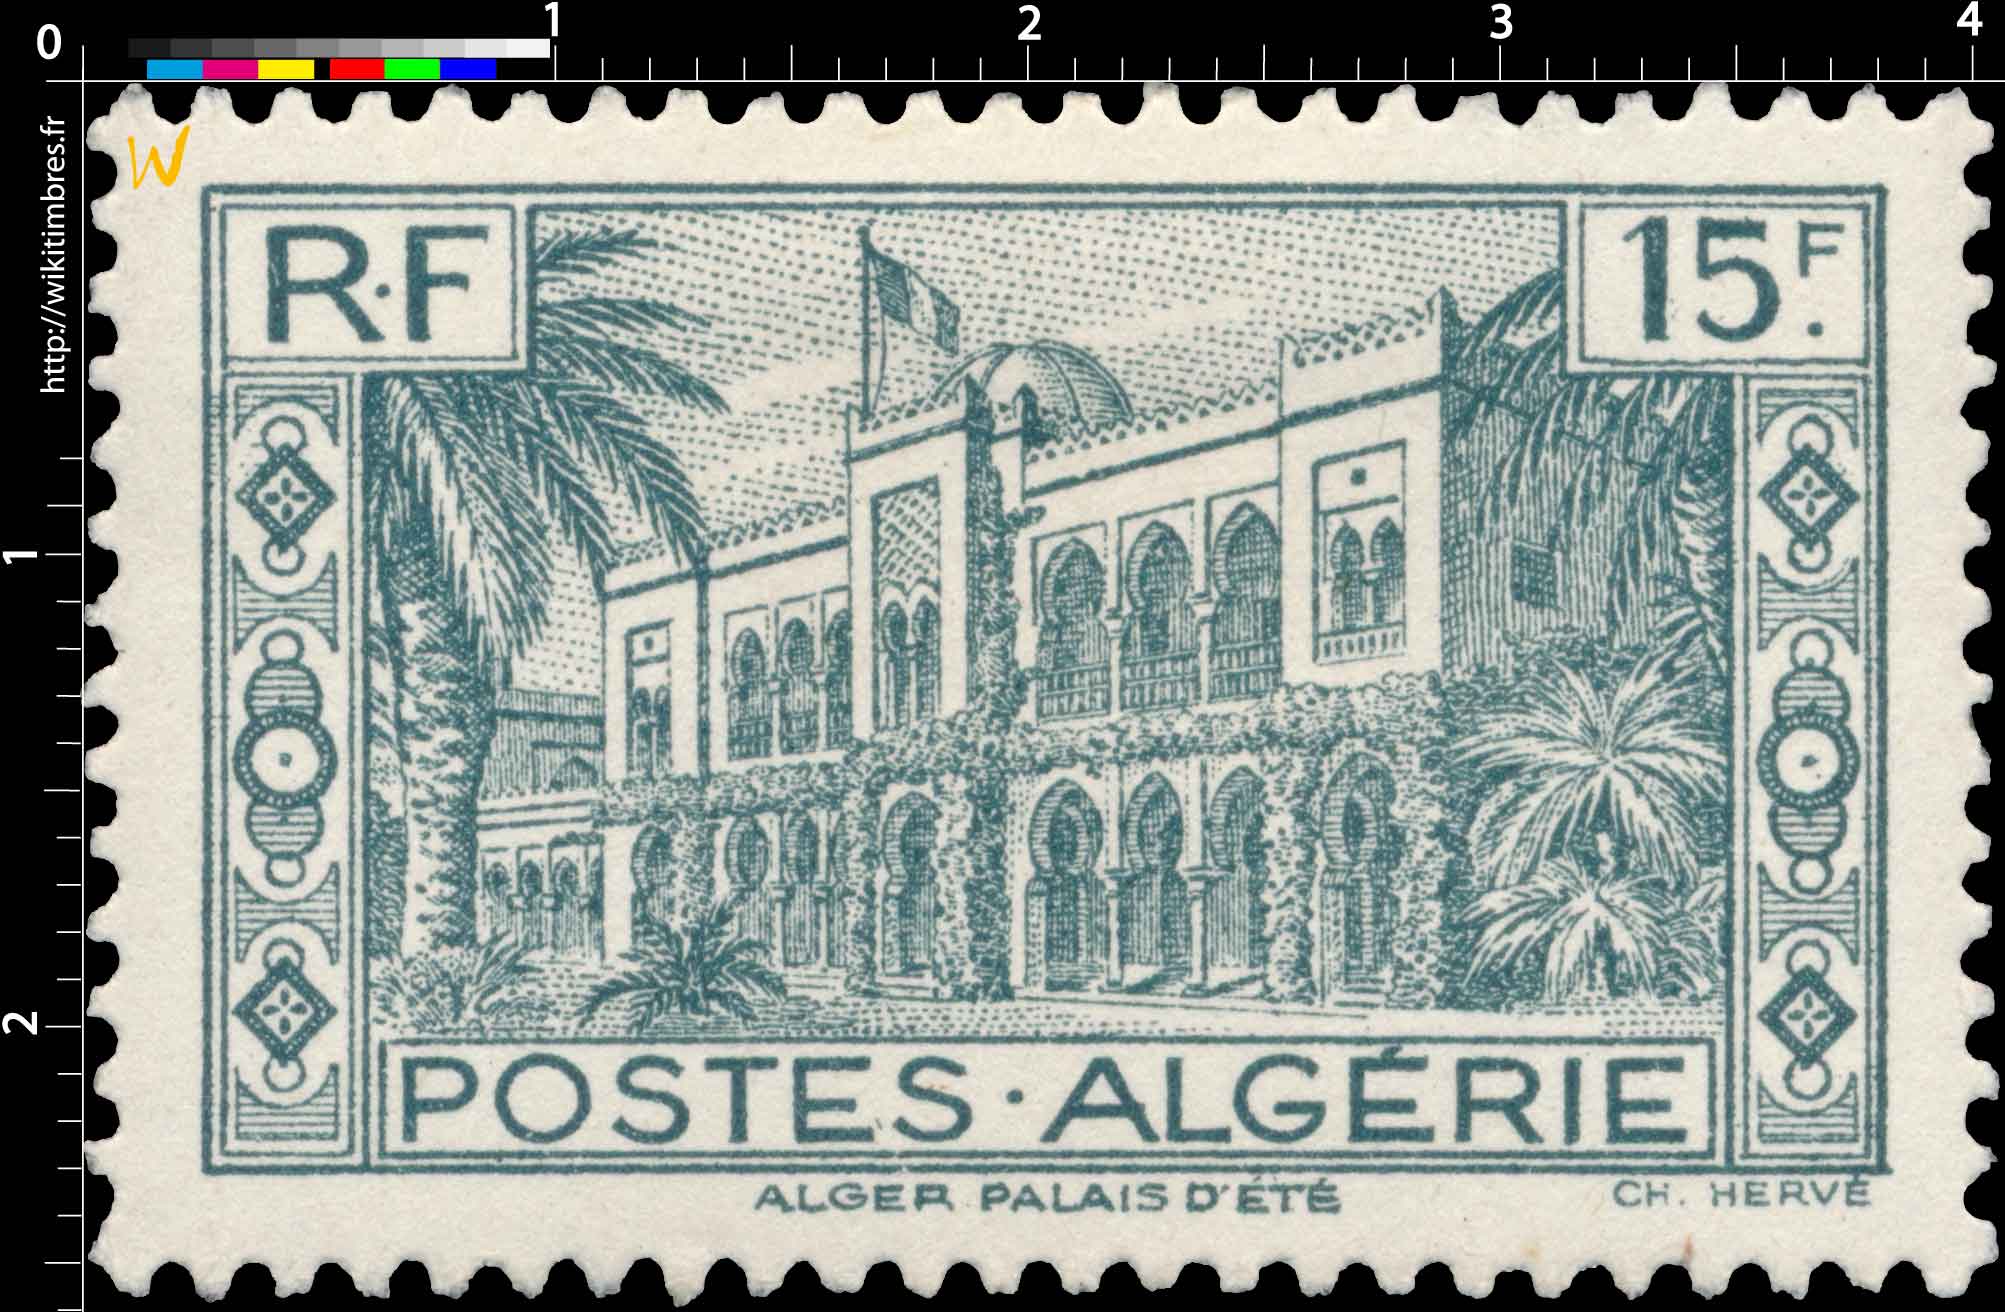 Algérie - Alger Palais d'été